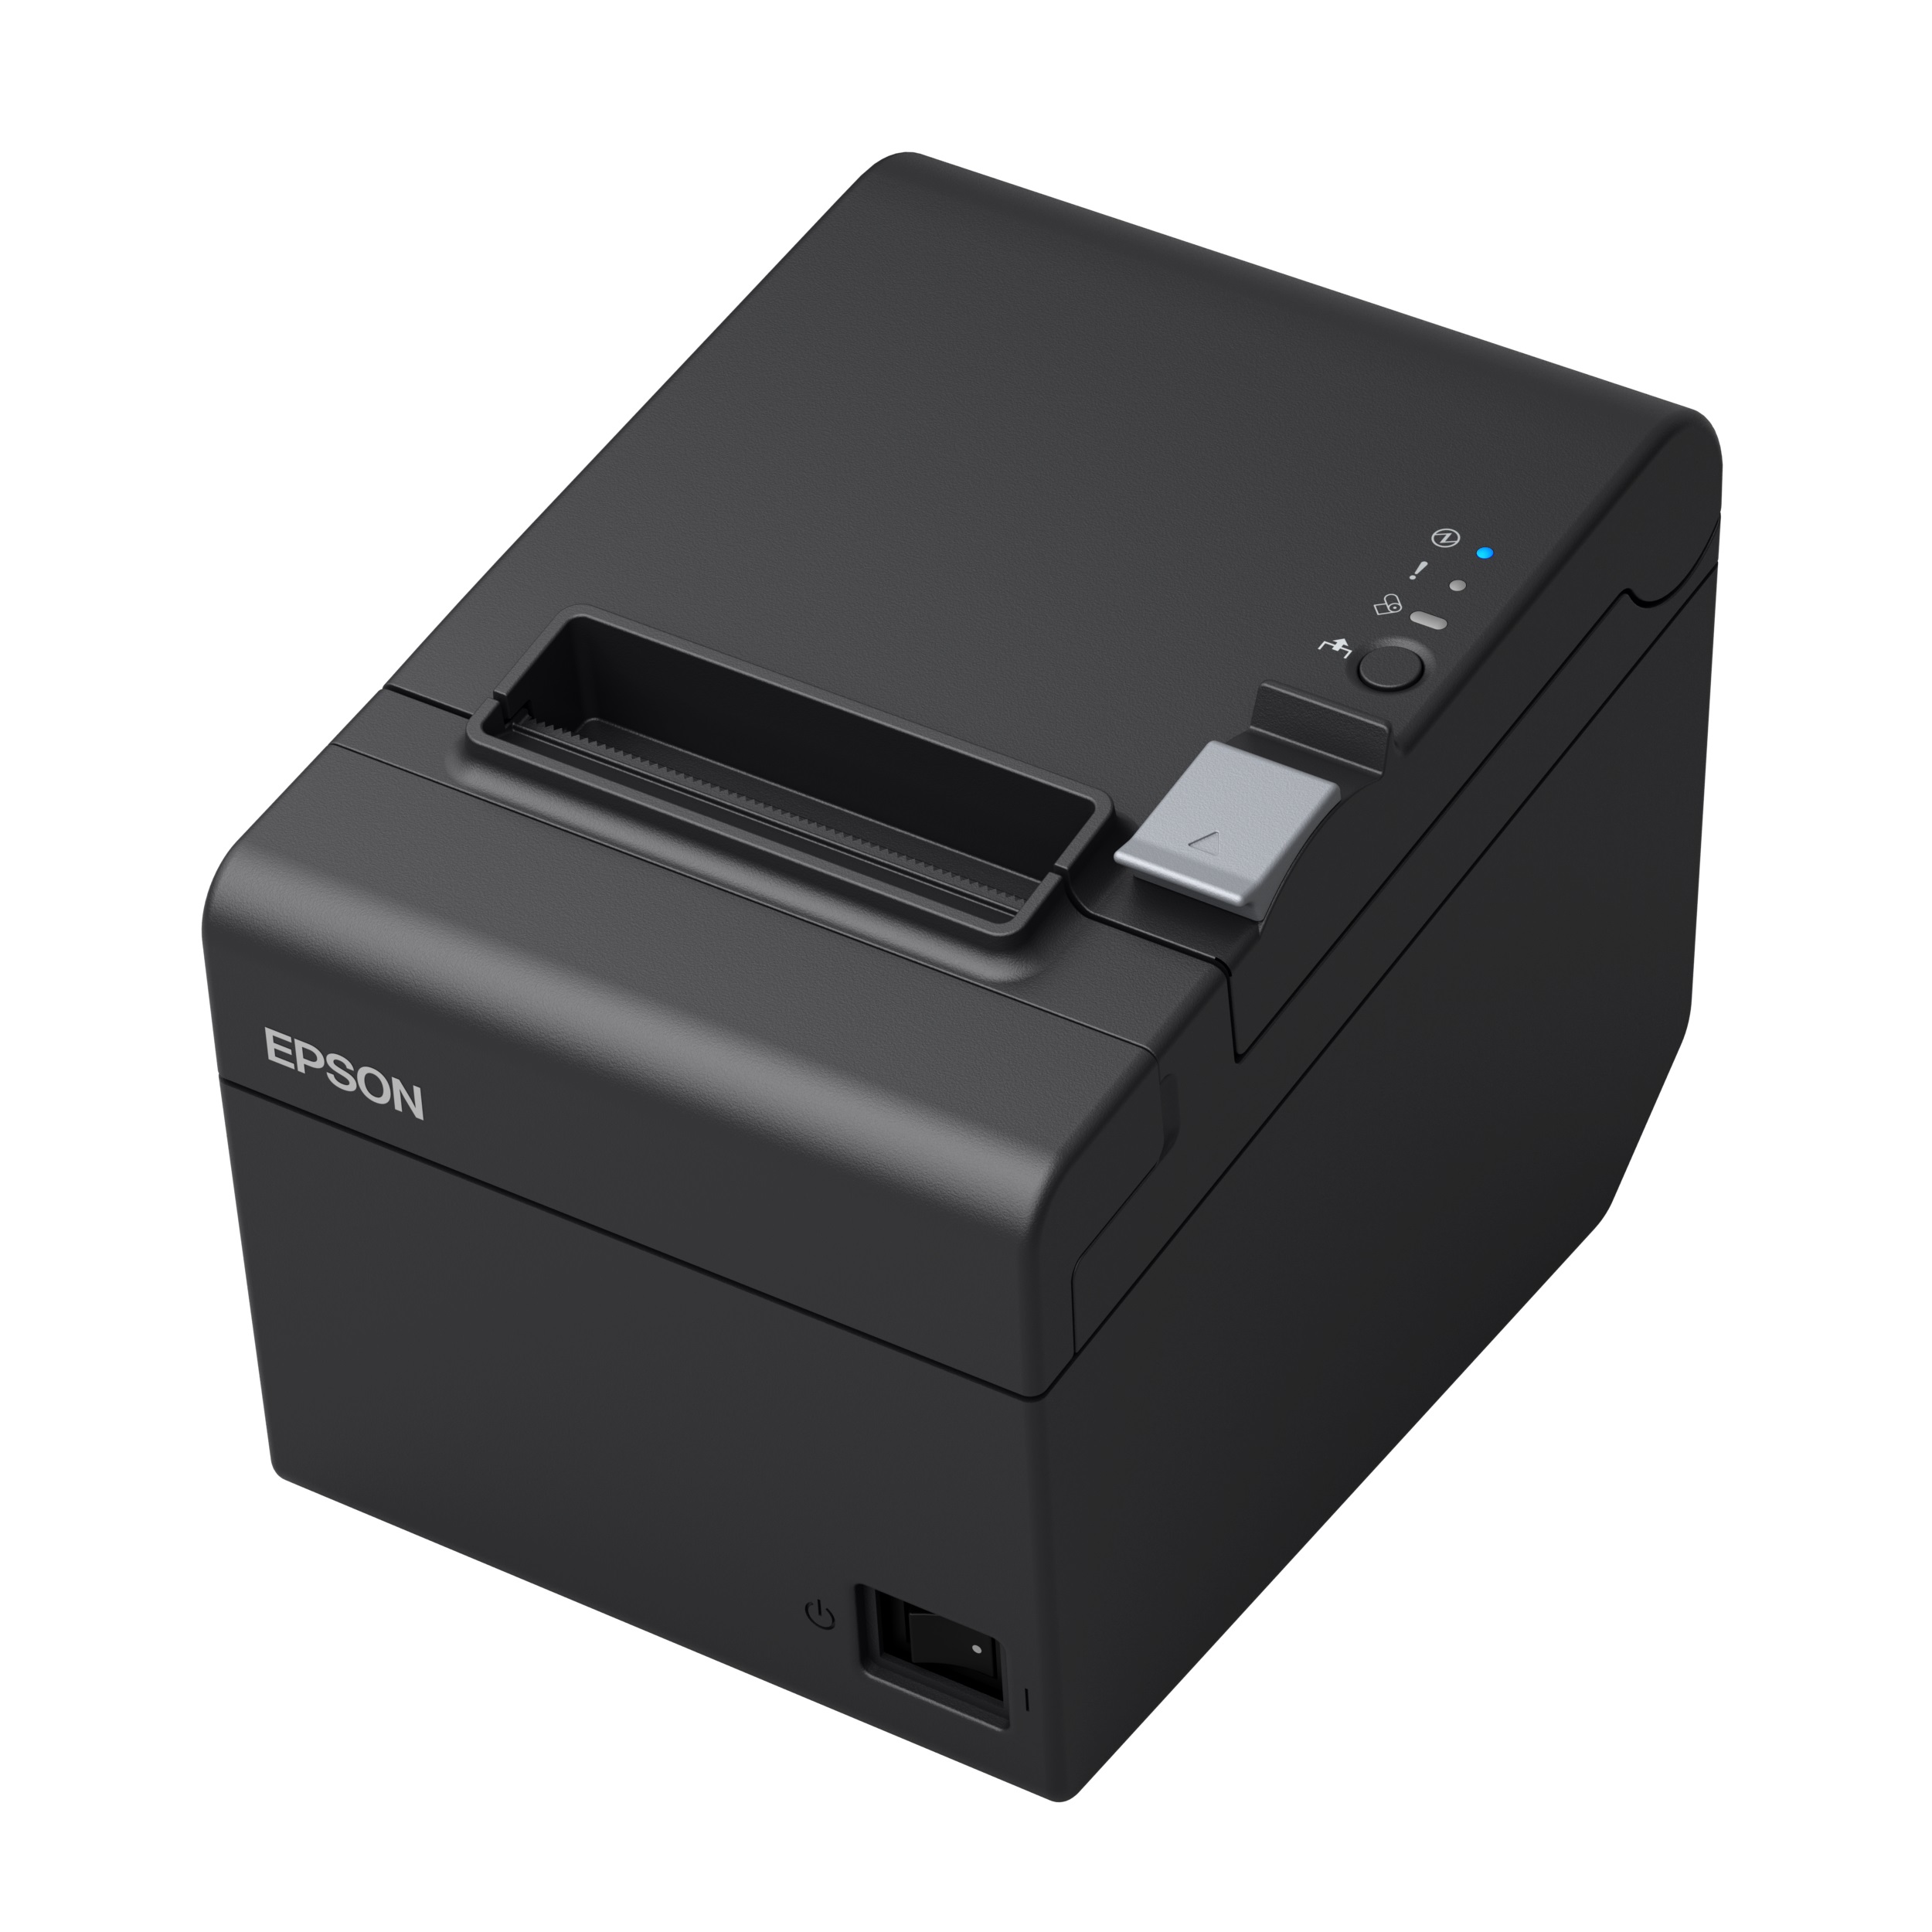 NeoPOS Quality POS Printer - Epson TM-T8